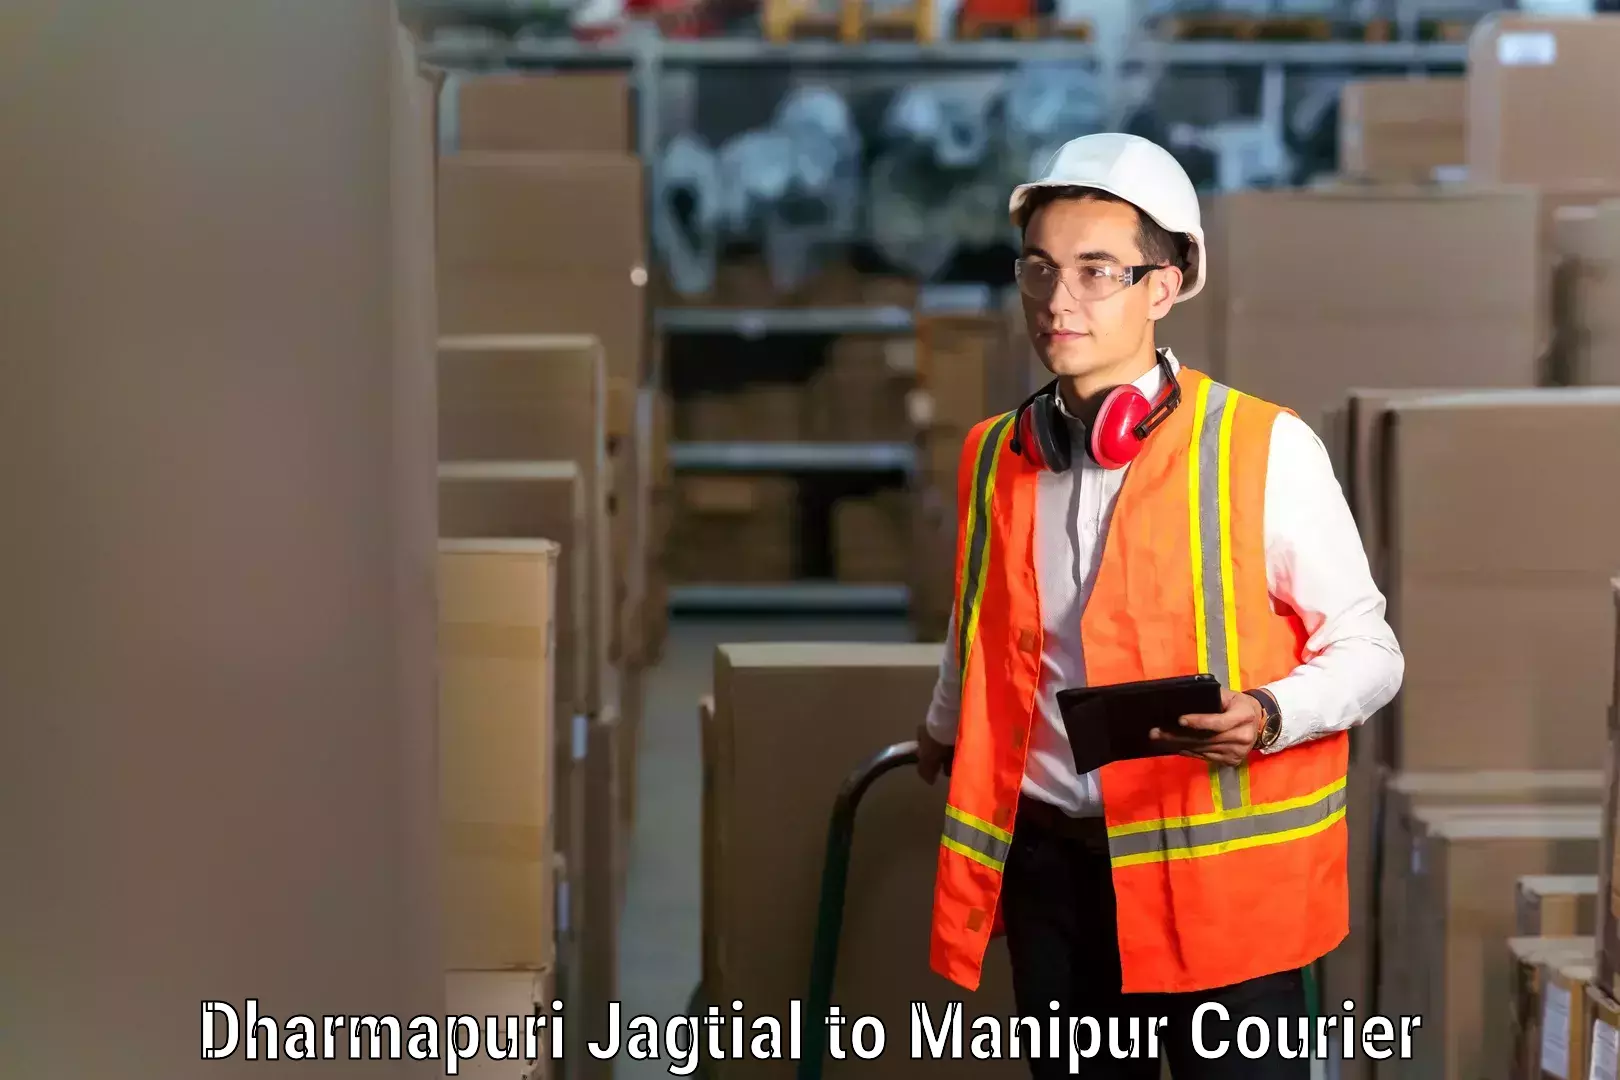 Professional goods transport in Dharmapuri Jagtial to Manipur